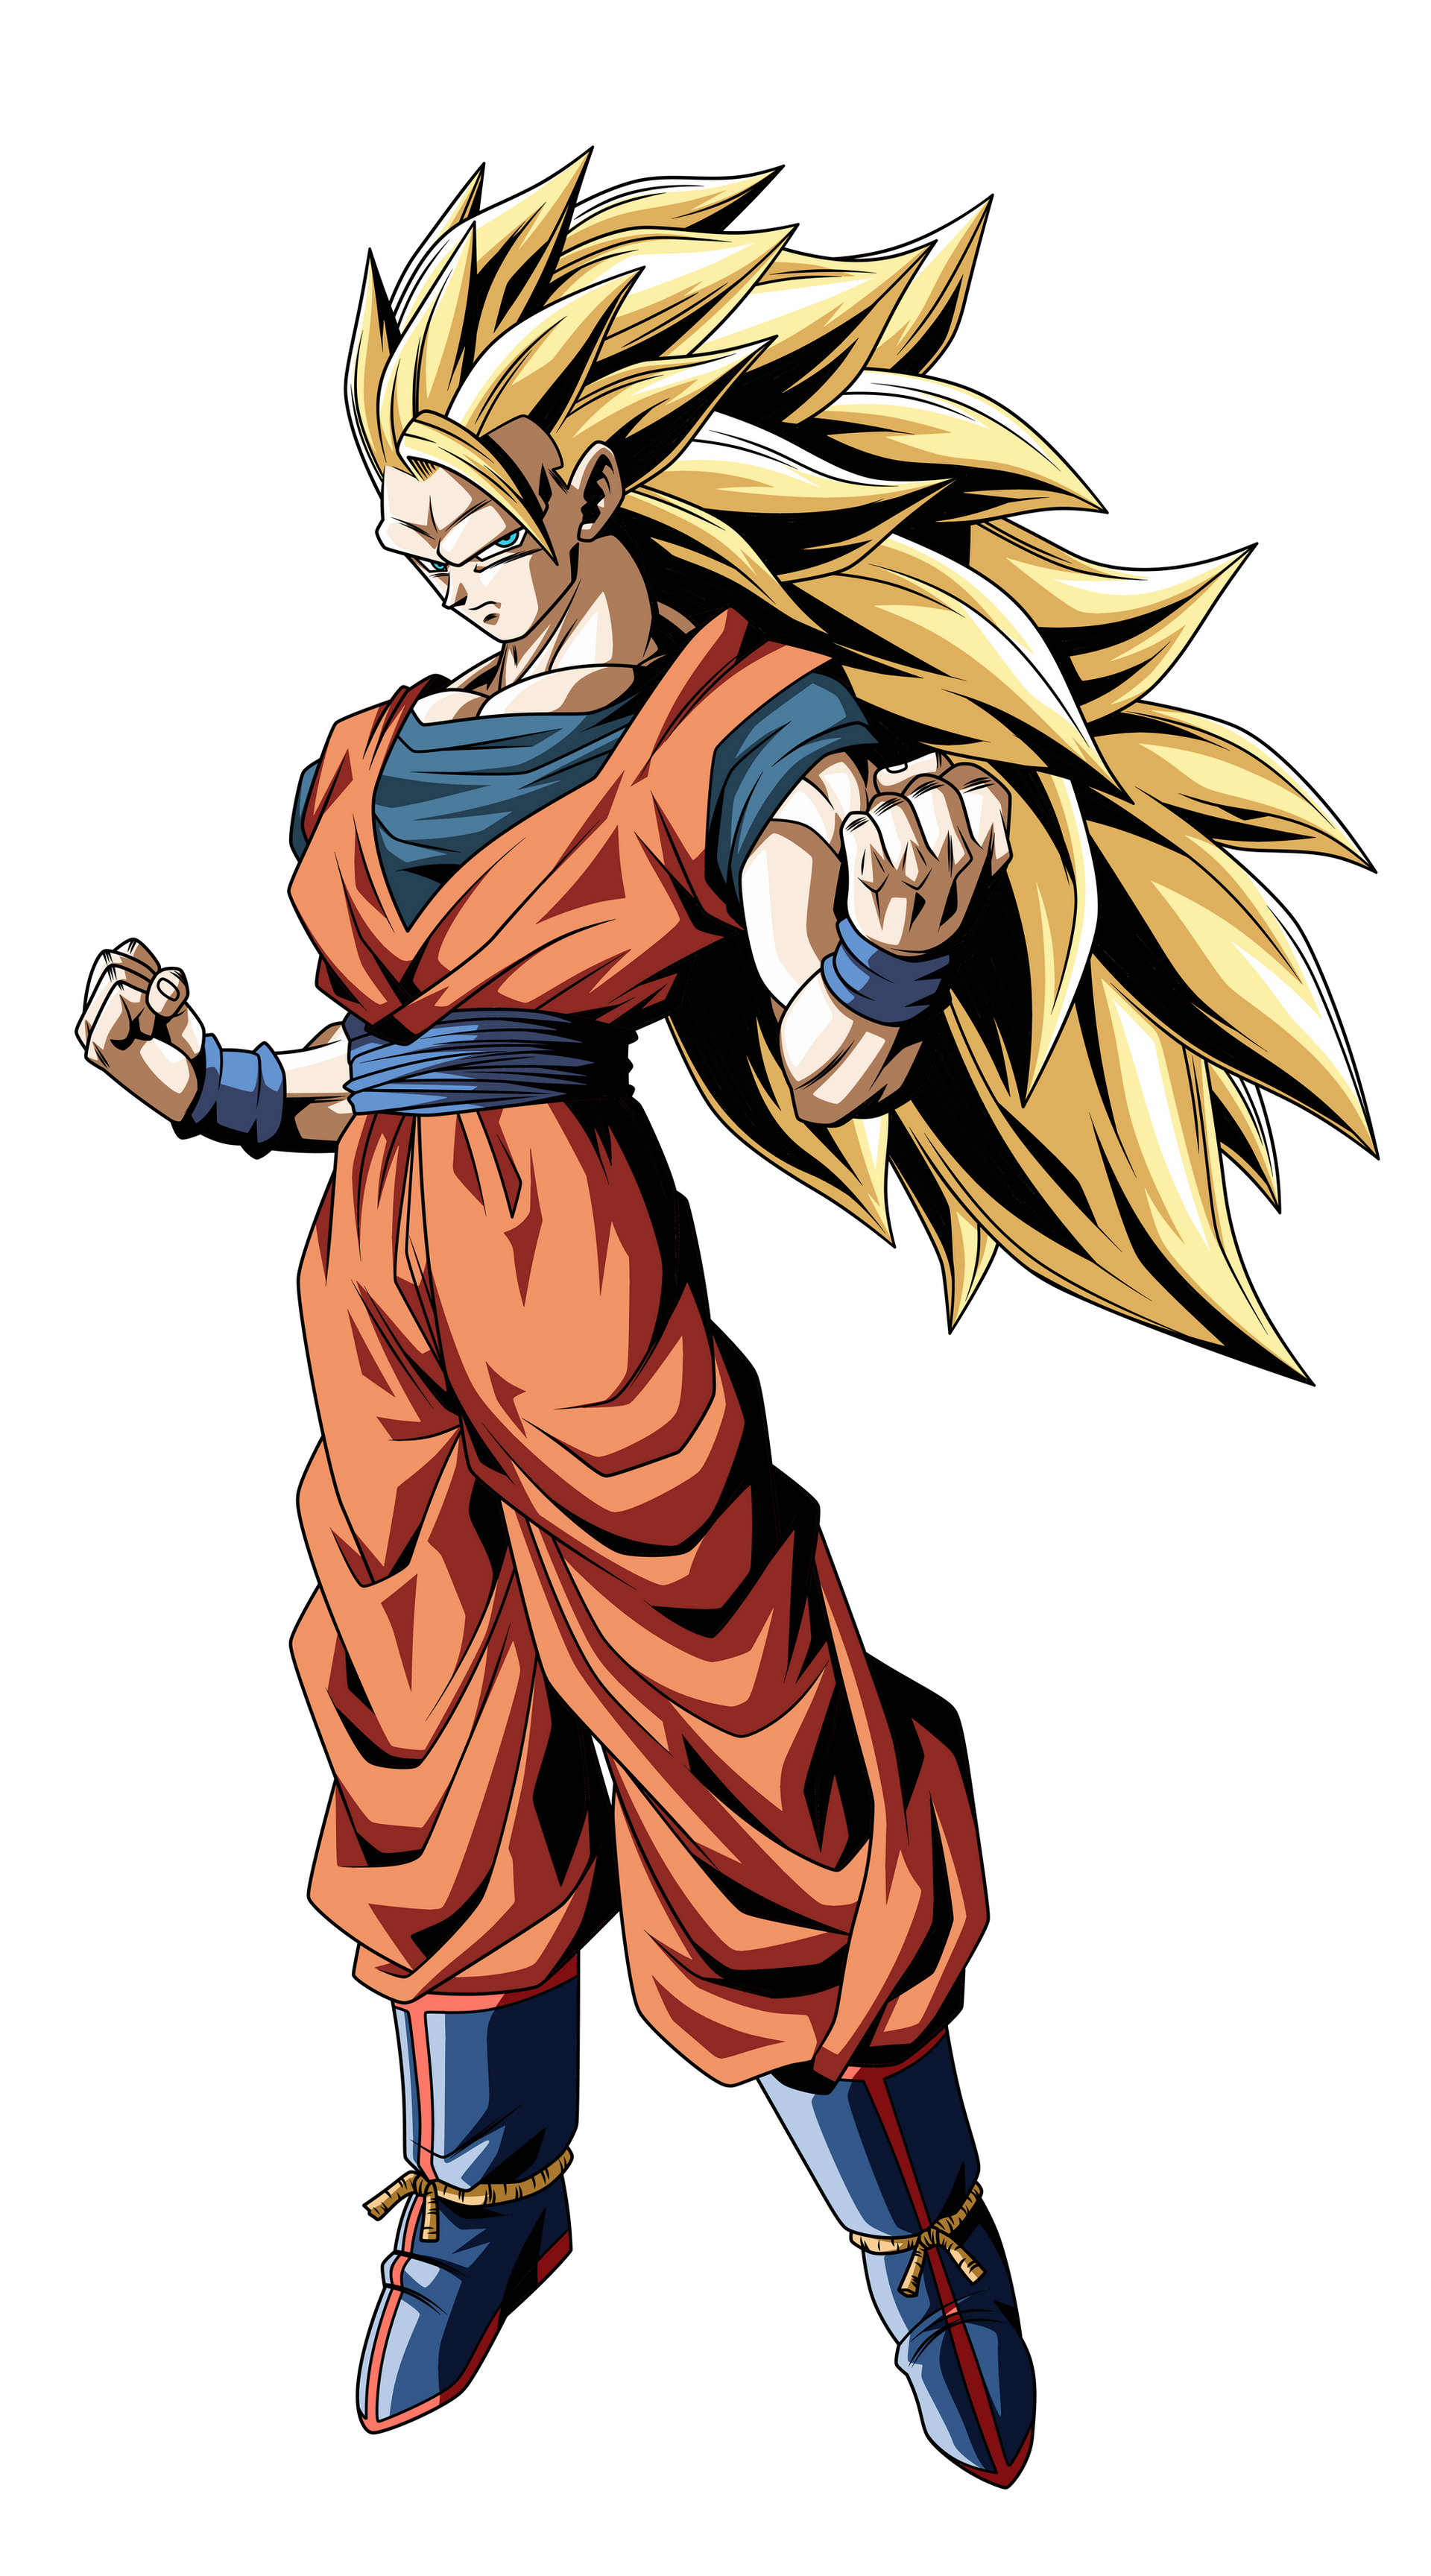 Son Goku Super Saiyajin 3 - Dragon Ball by UrielALV on DeviantArt